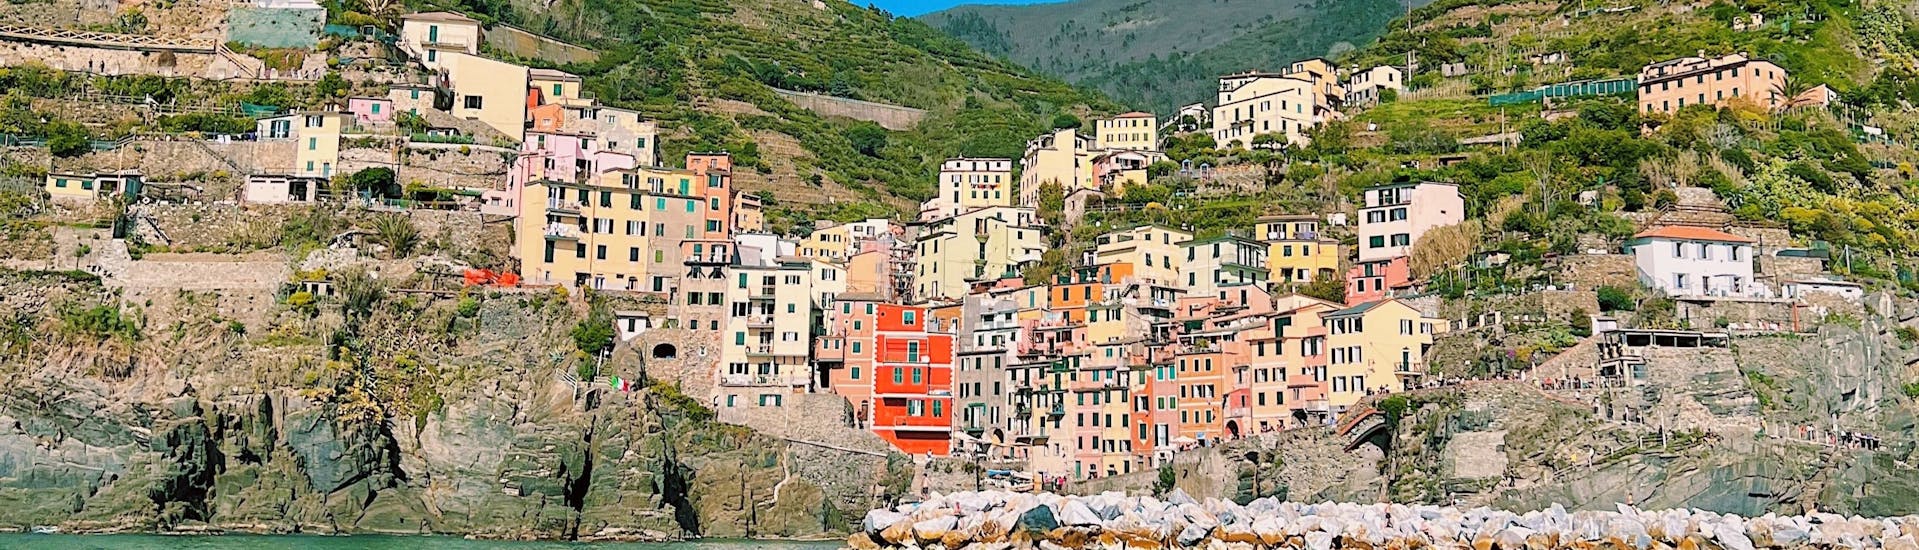 Het dorp Riomaggiore gezien vanaf de zee tijdens de zeiltocht van La Spezia naar Cinque Terre met Lunch met Velagiovane.